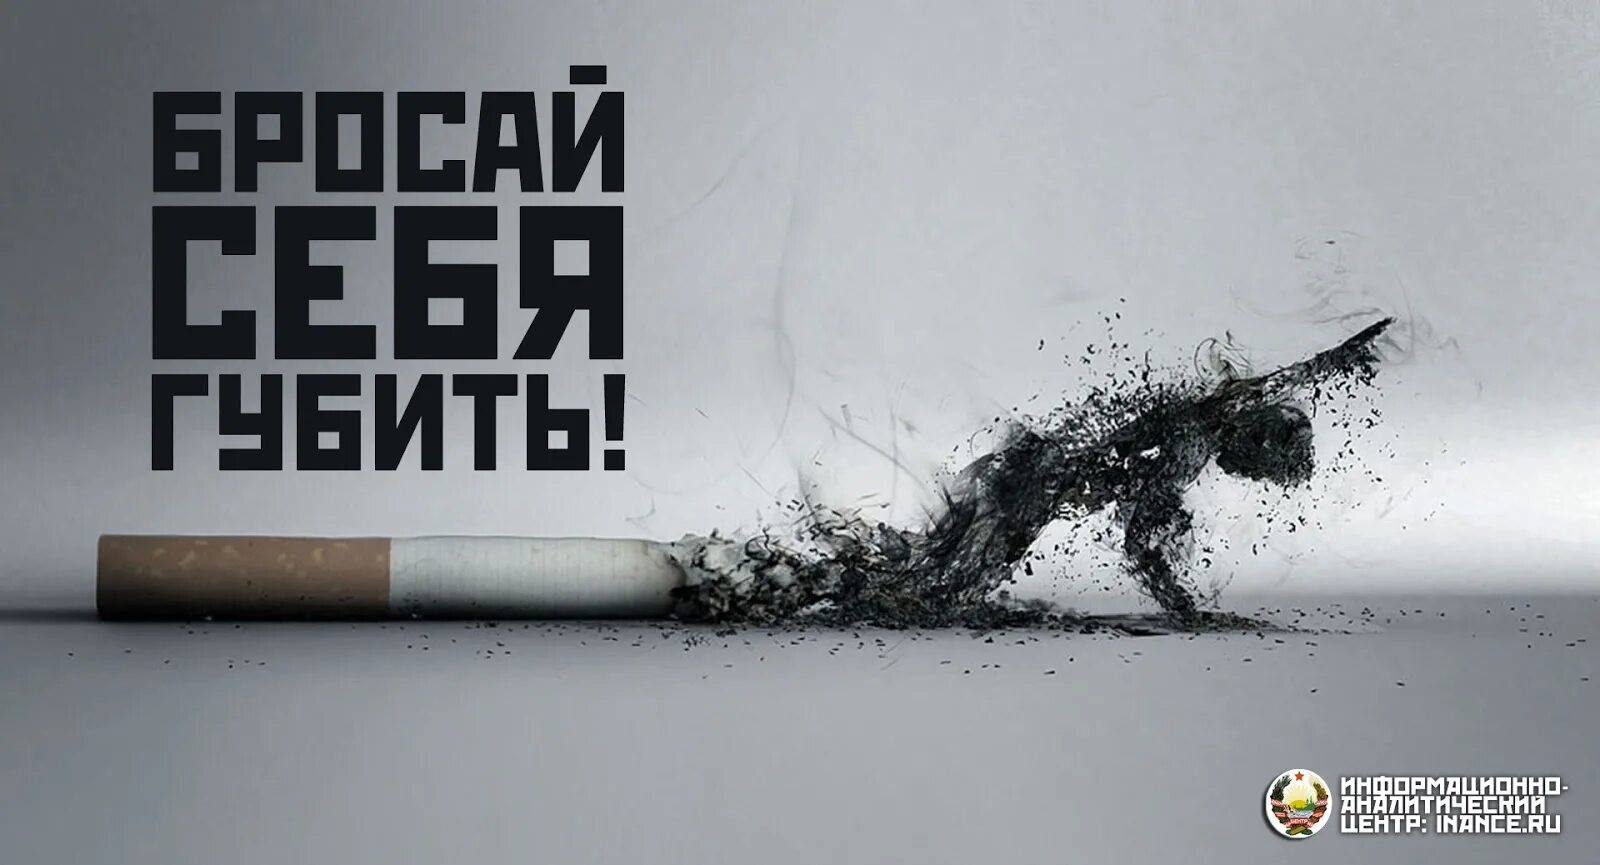 Против курения. Плакат против курения. Против сигарет. Баннер против курения. Кинь темы